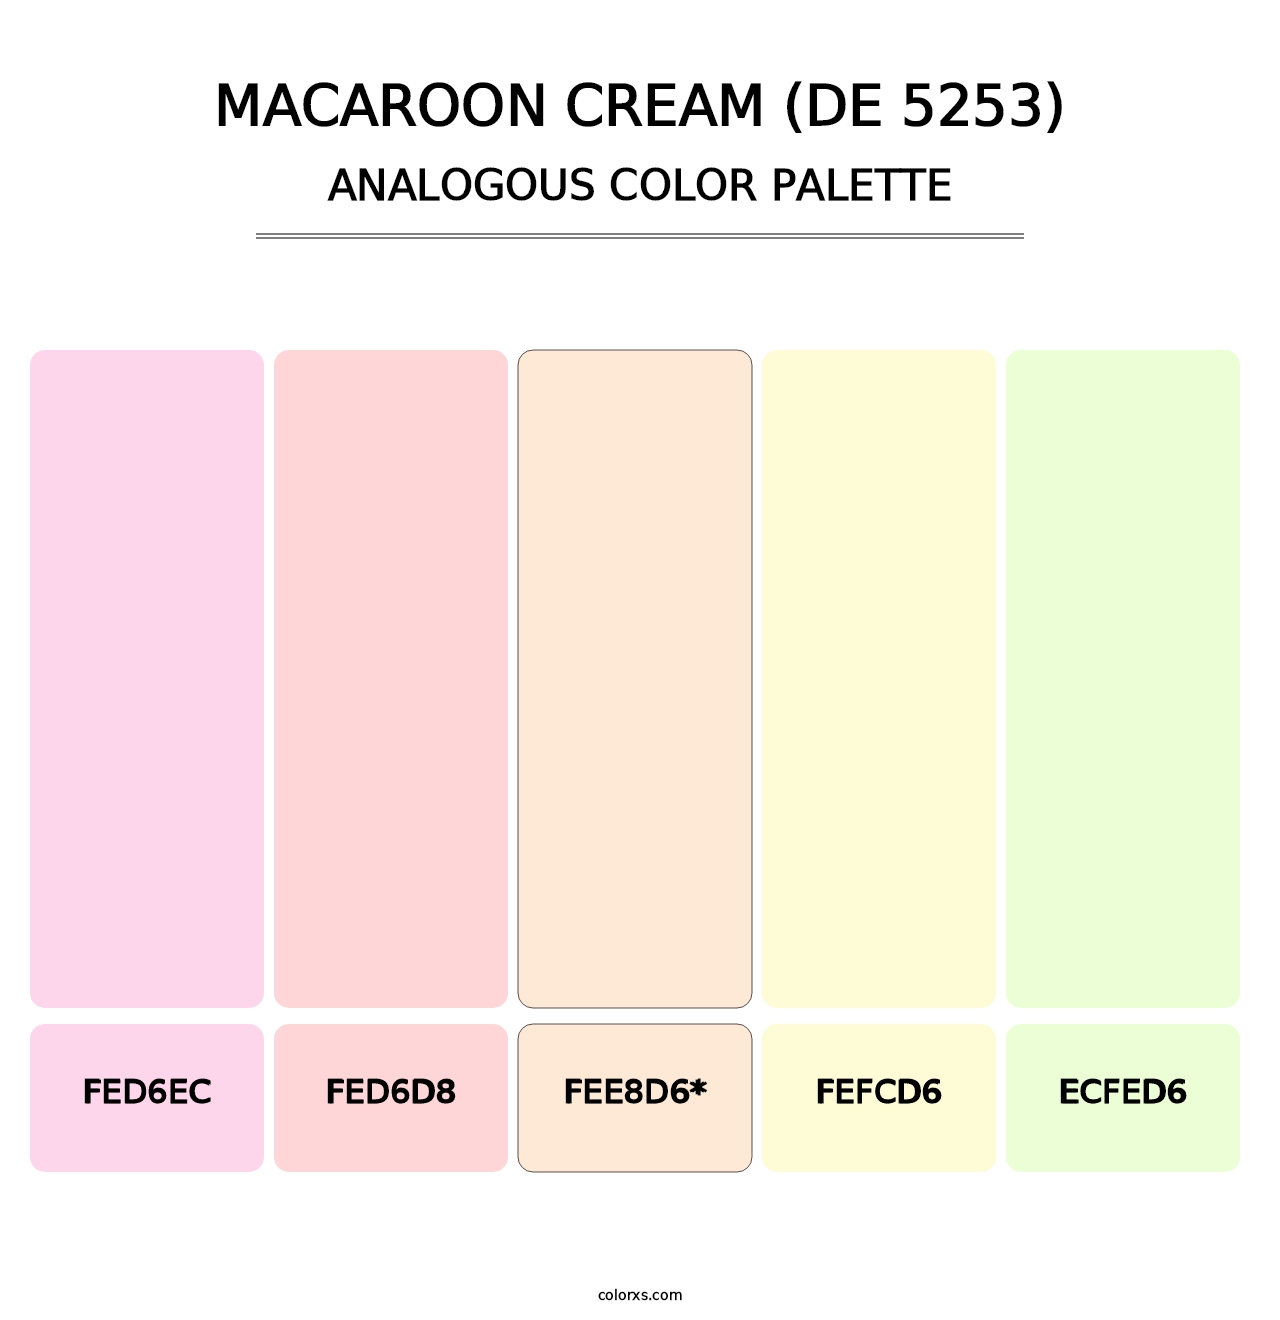 Macaroon Cream (DE 5253) - Analogous Color Palette